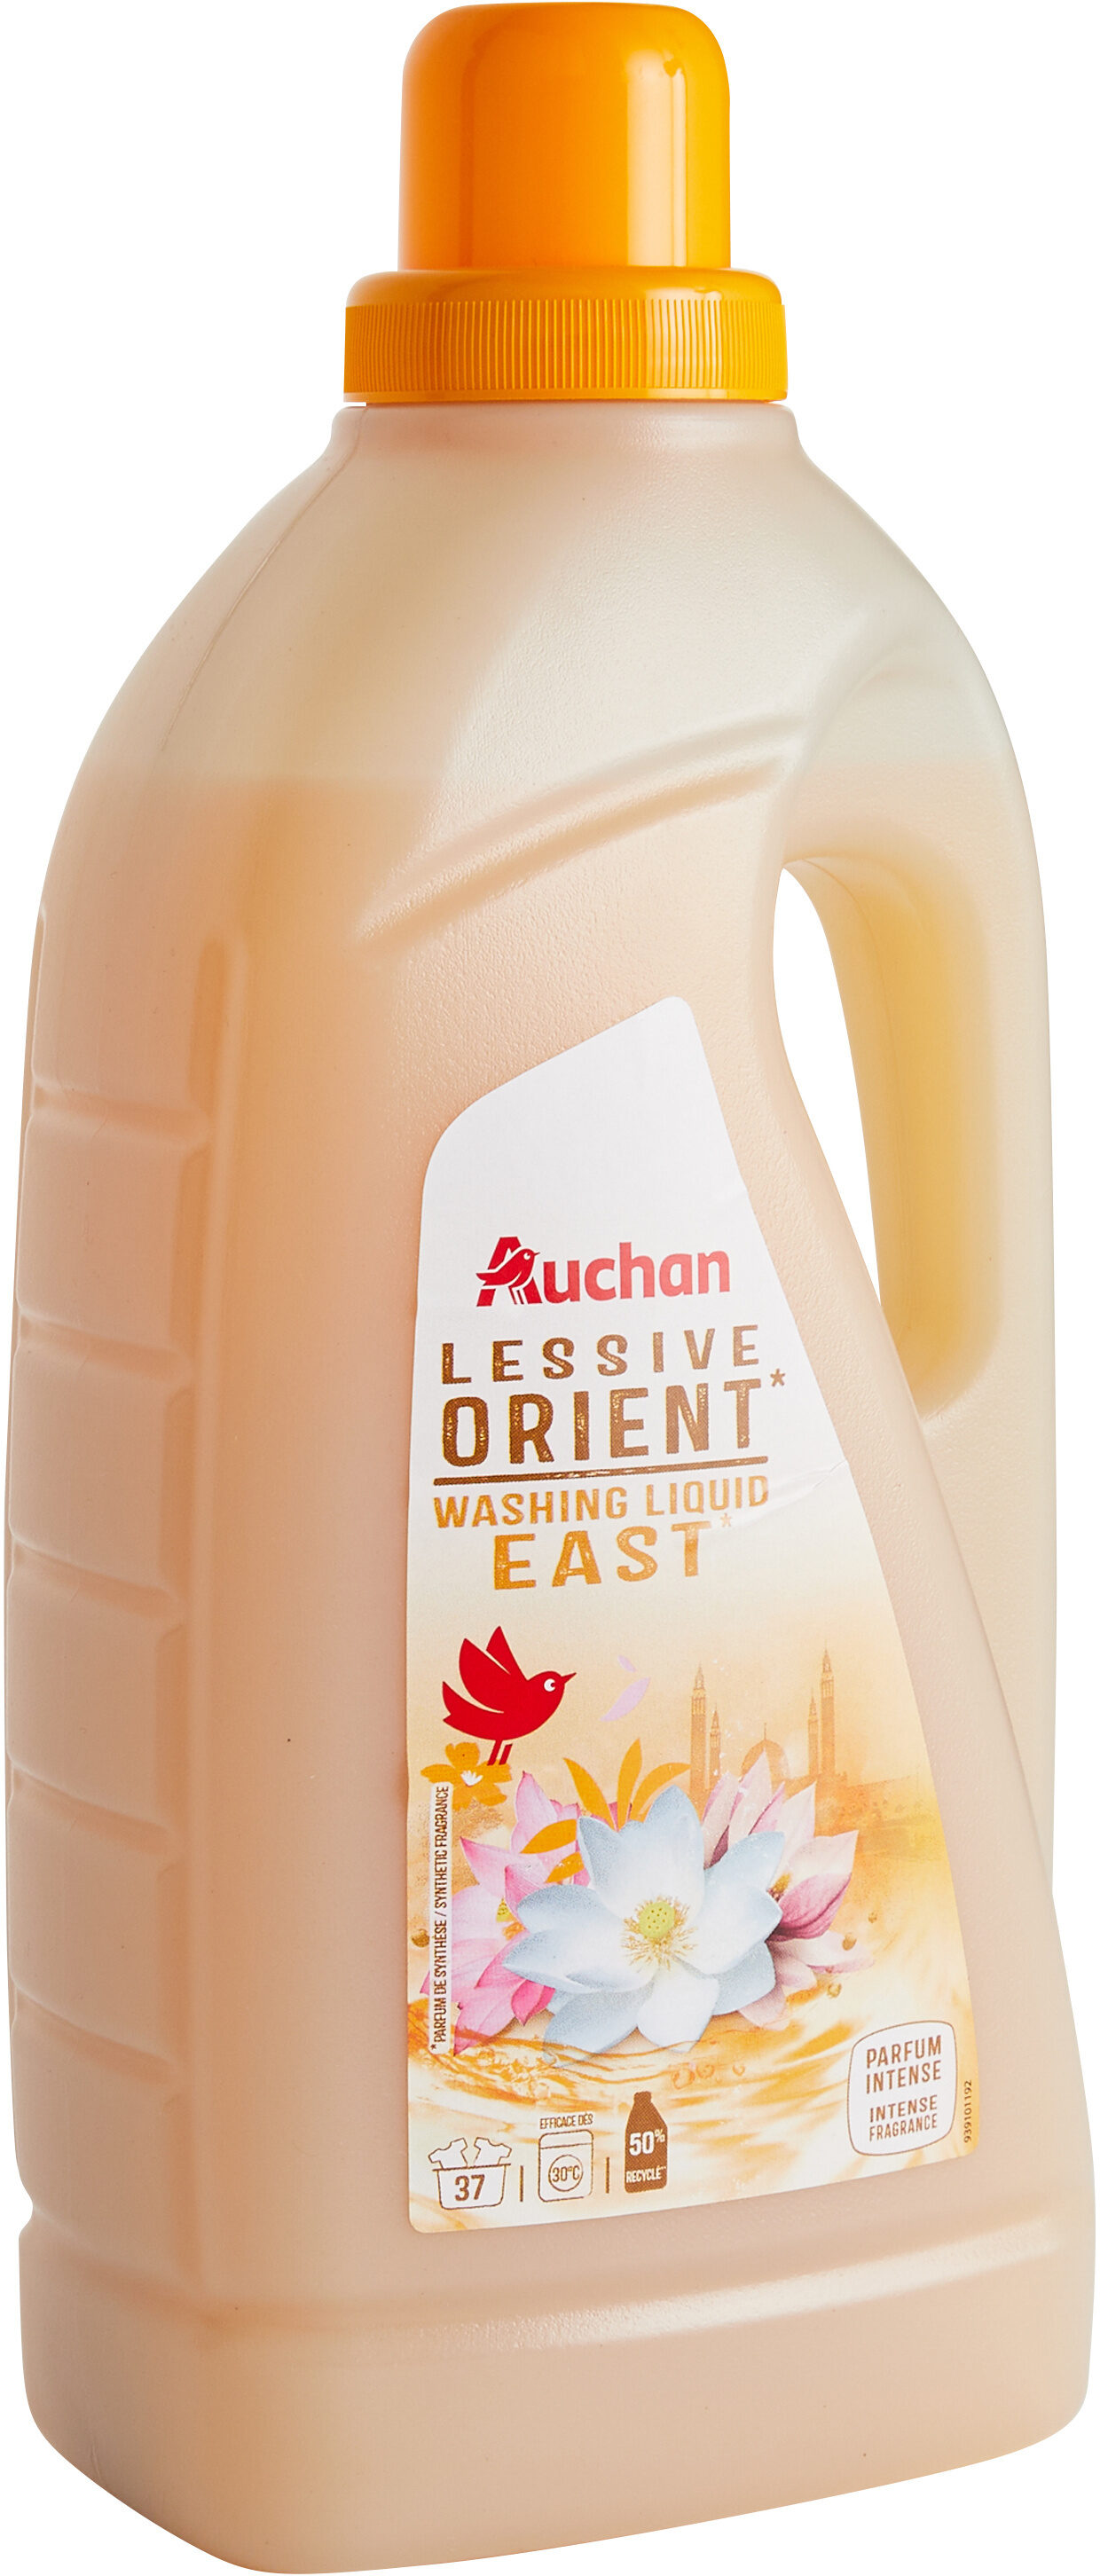 Lessive liquide Orient - Produit - fr